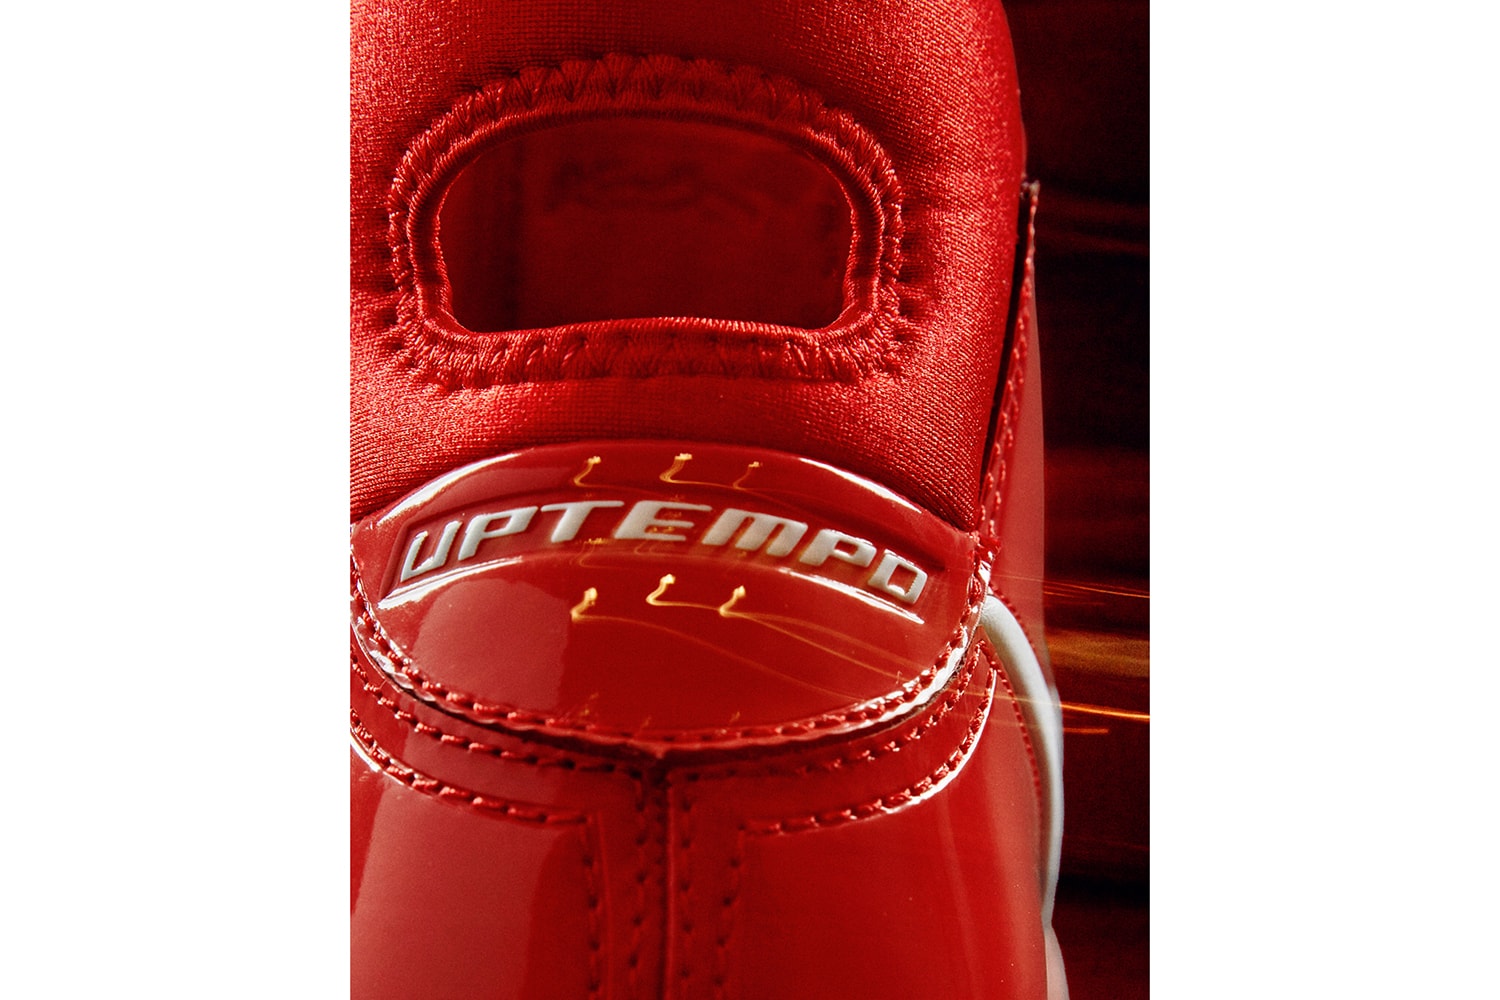 DeMar DeRozan Nike Kobe Protro 1 PE debut house of hoops sneakers footwear